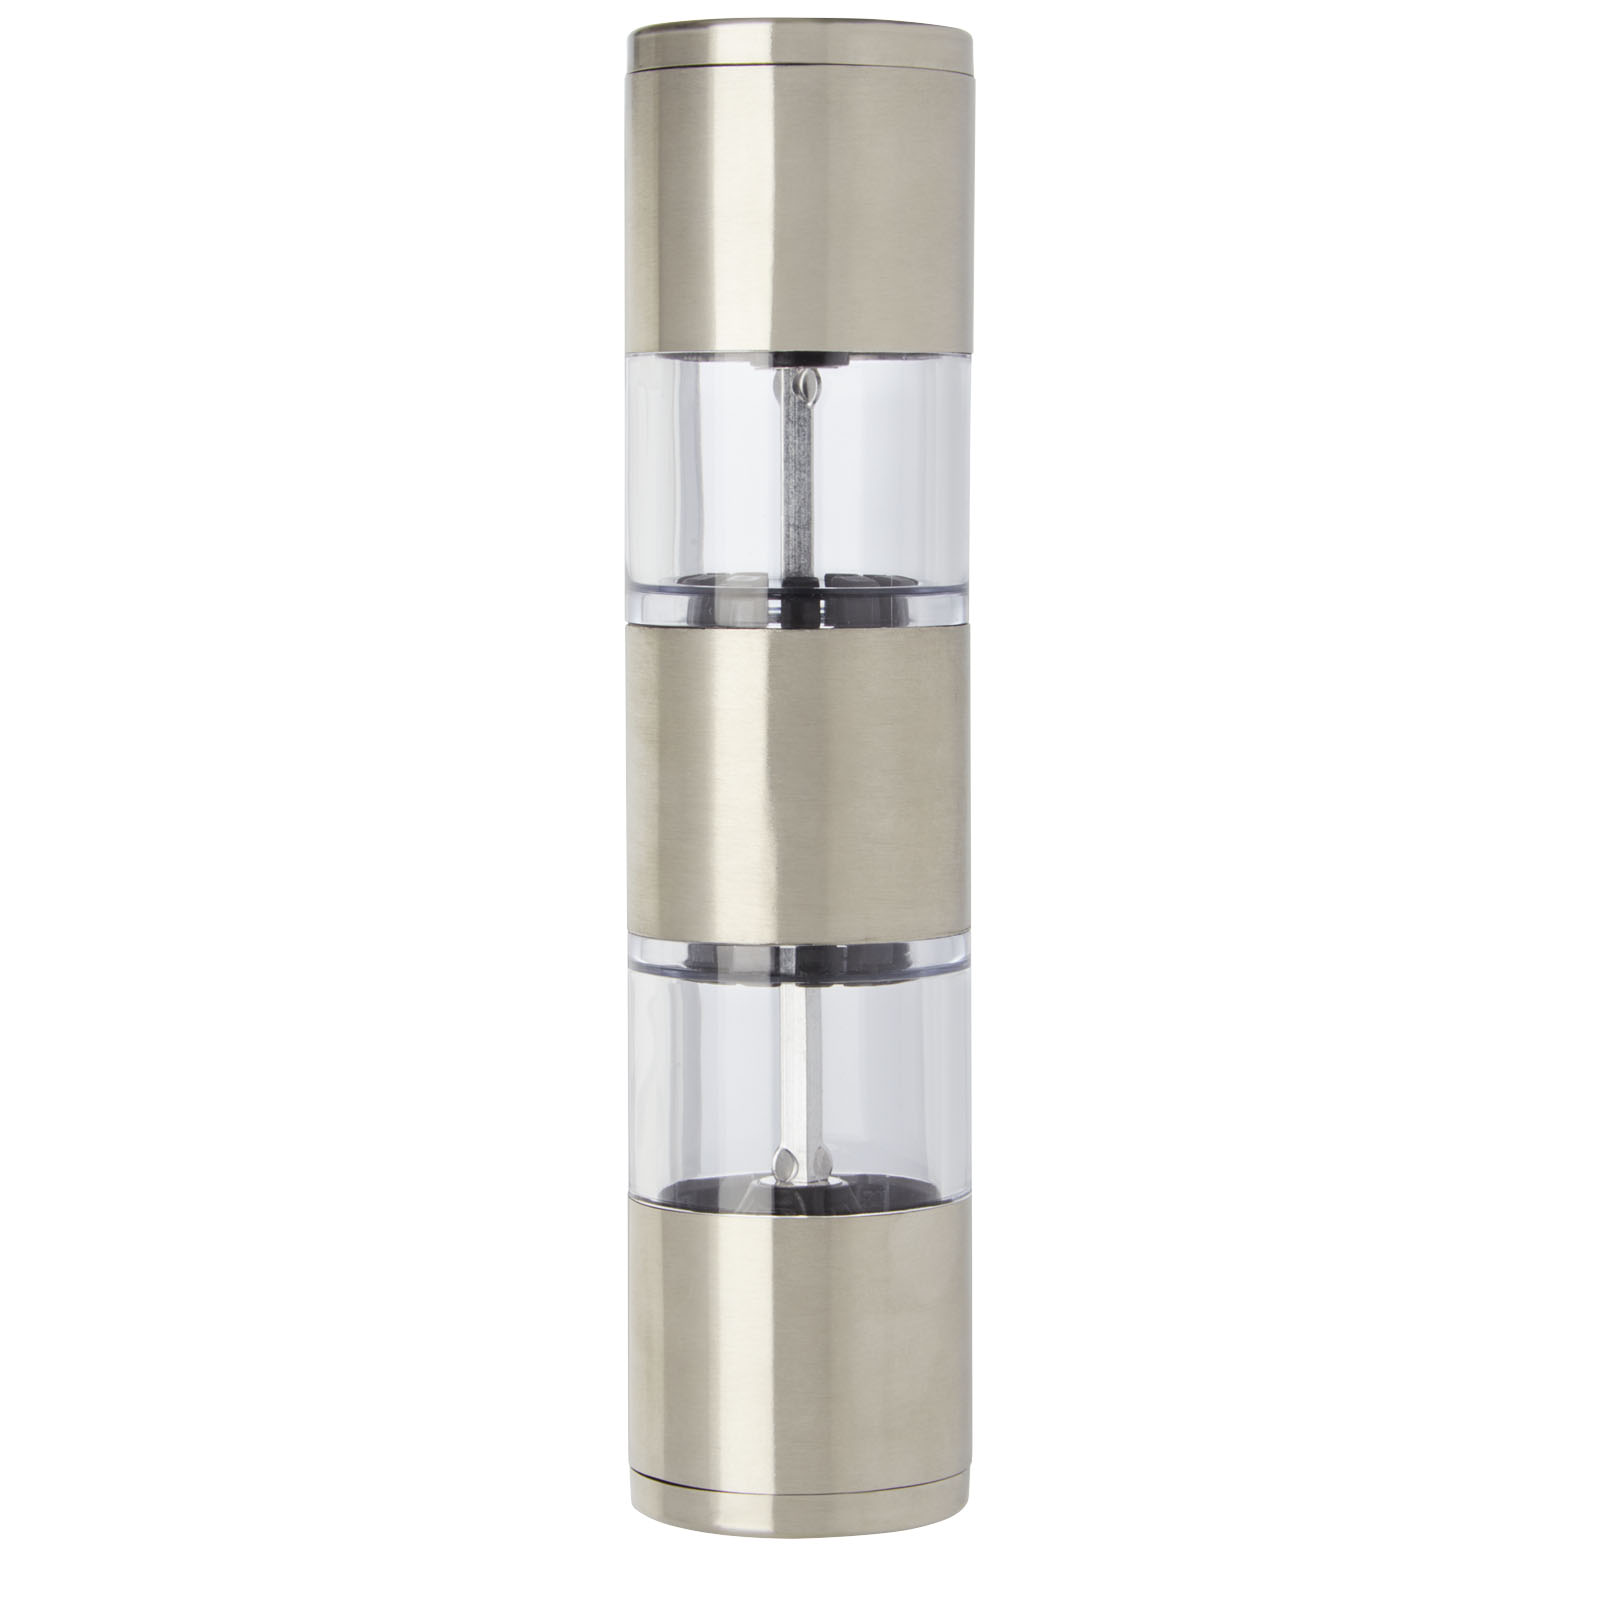 Advertising Kitchenware - Auro salt and pepper grinder - 2